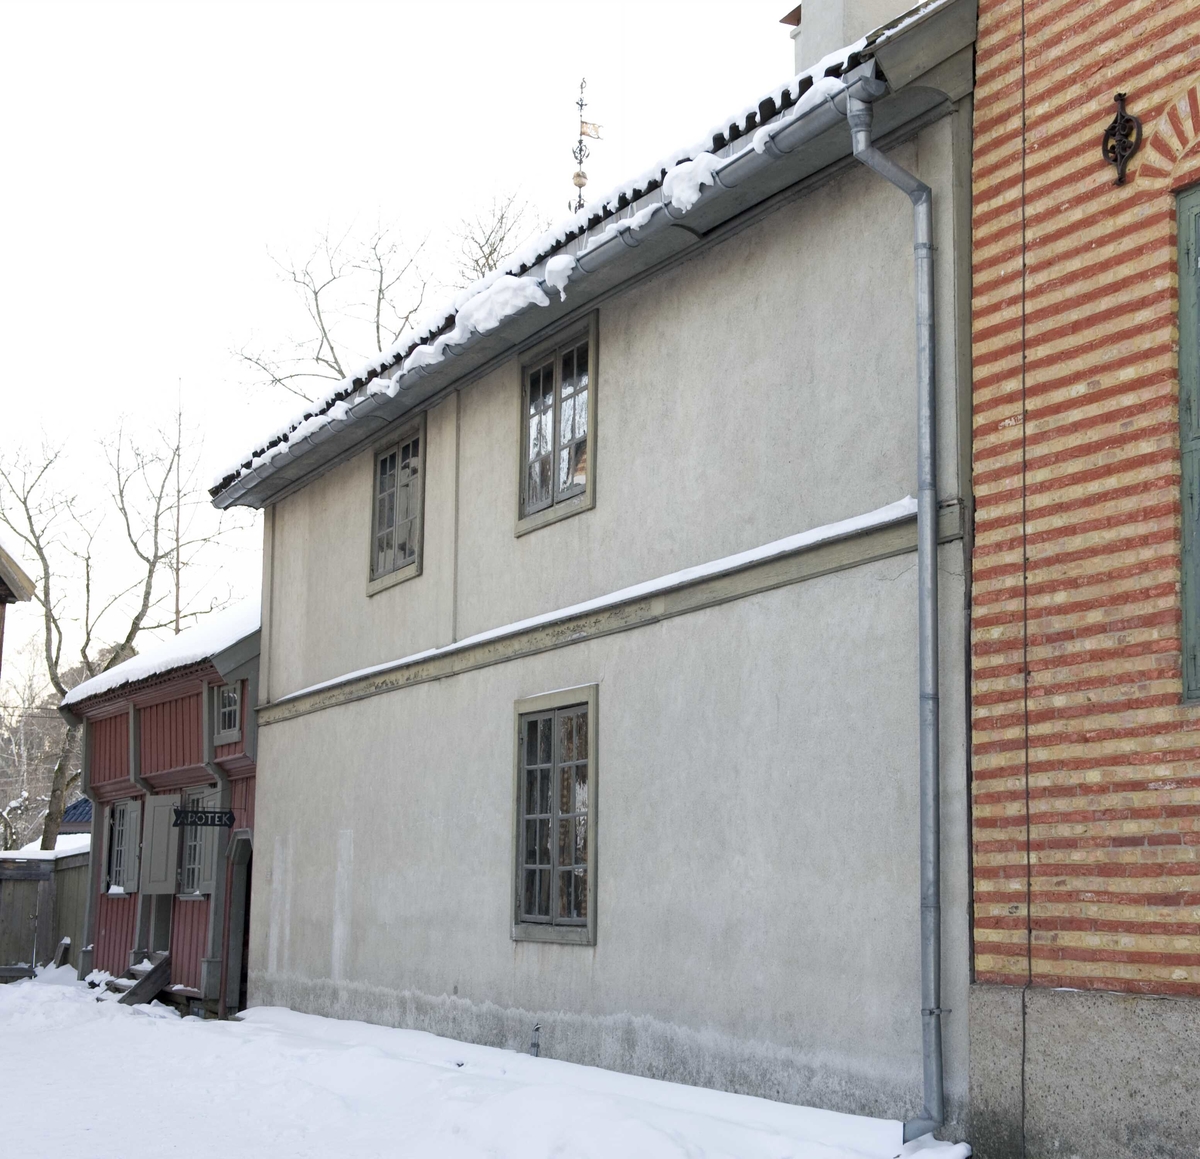 Ca.1700
Bygningen var opprinnelig uthus for Rådhusgaten 7, en av byens største gårder, som i 1733 ble rådhus. Veggene er av tømmer, men er rappet med kalkpuss. Opprinnelig var huset fjøs med høyloft over, senere ble det tatt i bruk som fengsel - rådhuset var nemlig også rettslokale og politistasjon. Legpredikanten Hans Nilsen Hauge satt fengslet i et rom på loftet fra 1804 til 1811.

Norsk folkemuseums guidebok,  1996